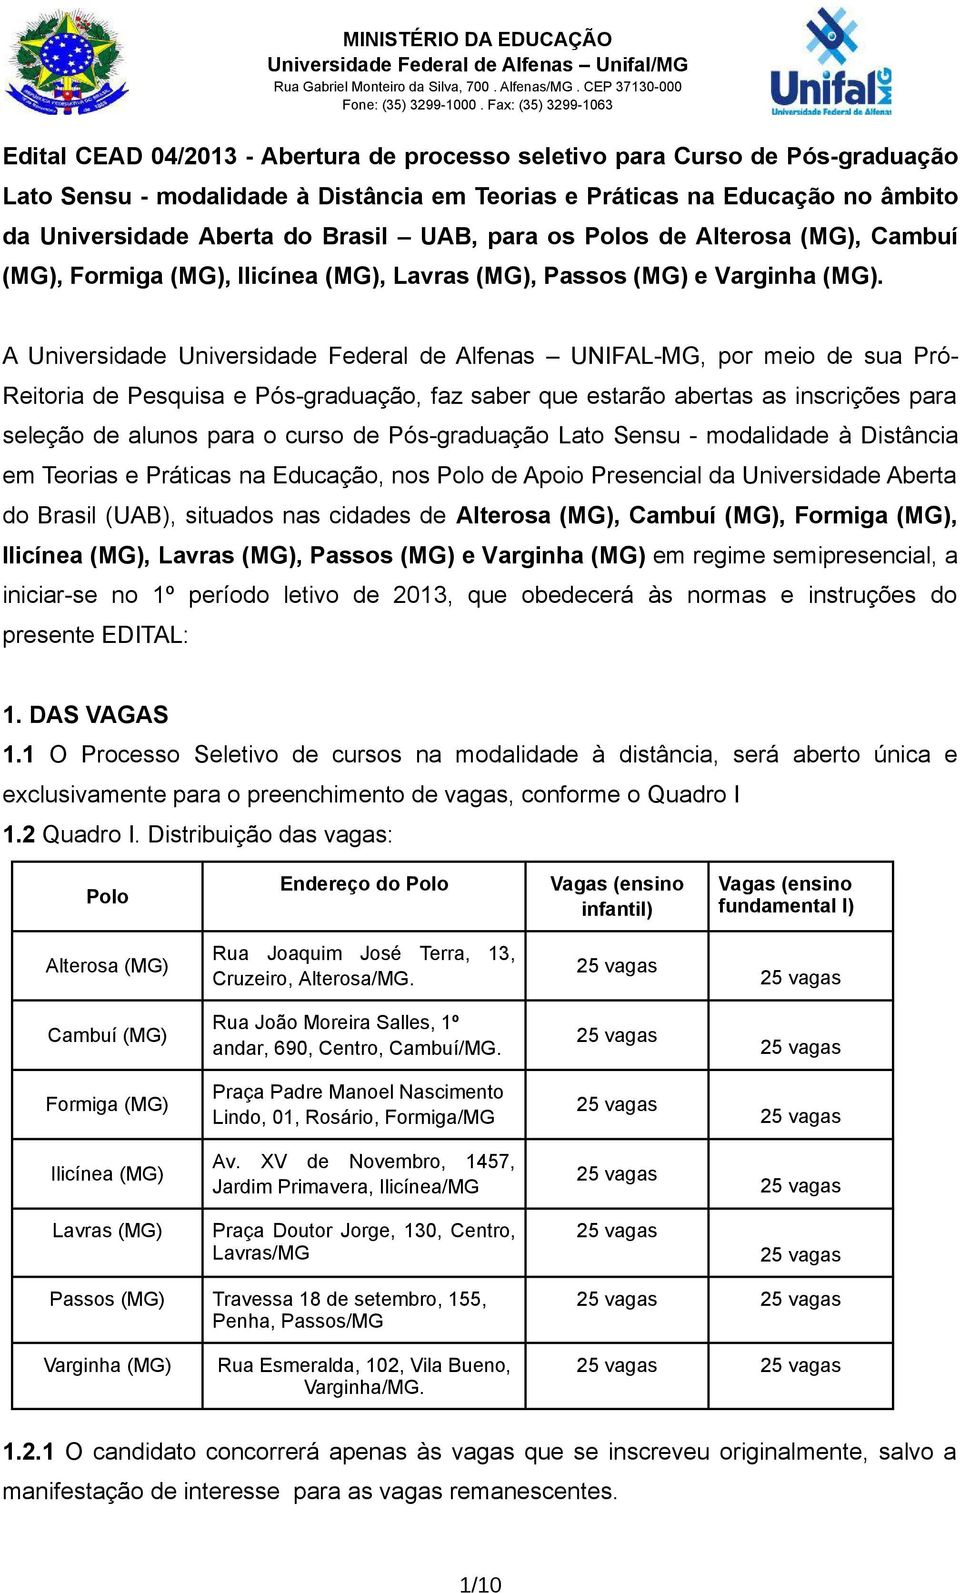 A Universidade Universidade Federal de Alfenas UNIFAL-MG, por meio de sua Pró- Reitoria de Pesquisa e Pós-graduação, faz saber que estarão abertas as inscrições para seleção de alunos para o curso de